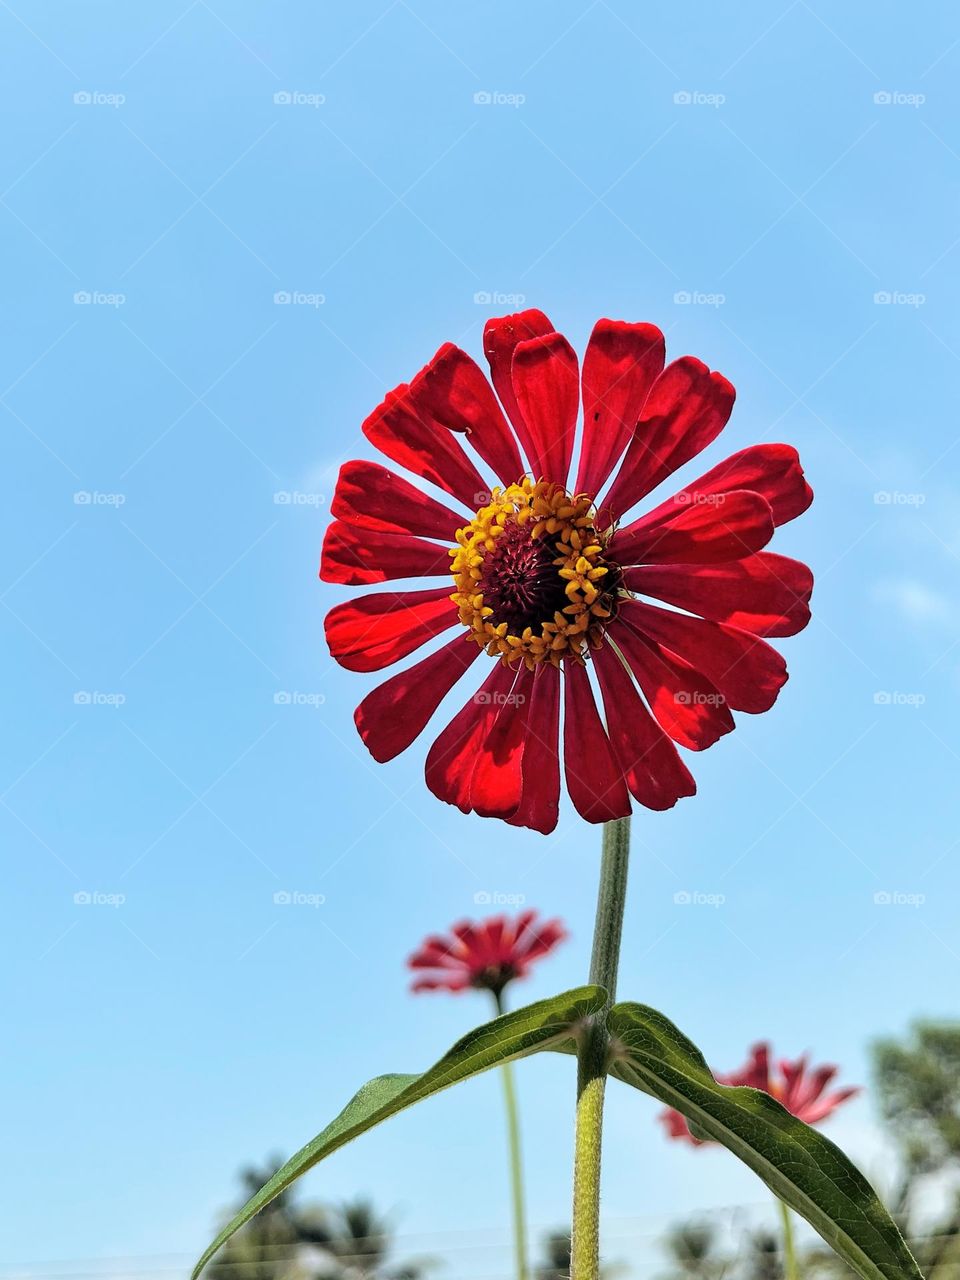 Flower 